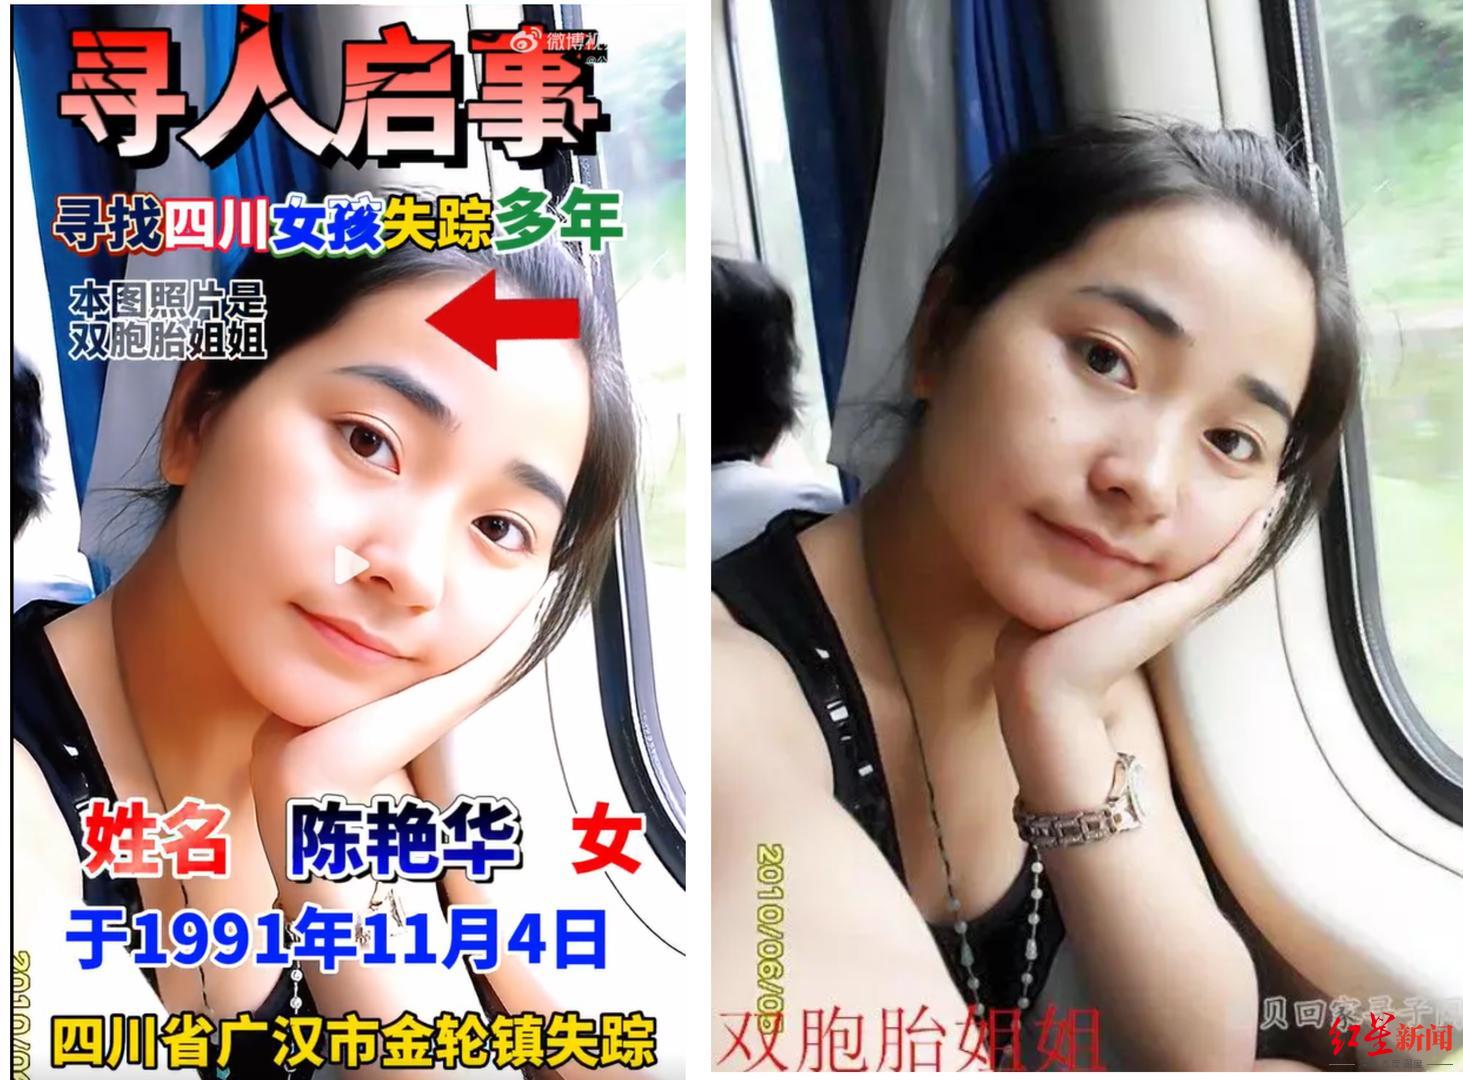 ↑双胞胎姐姐发布自己的照片寻找妹妹陈艳华